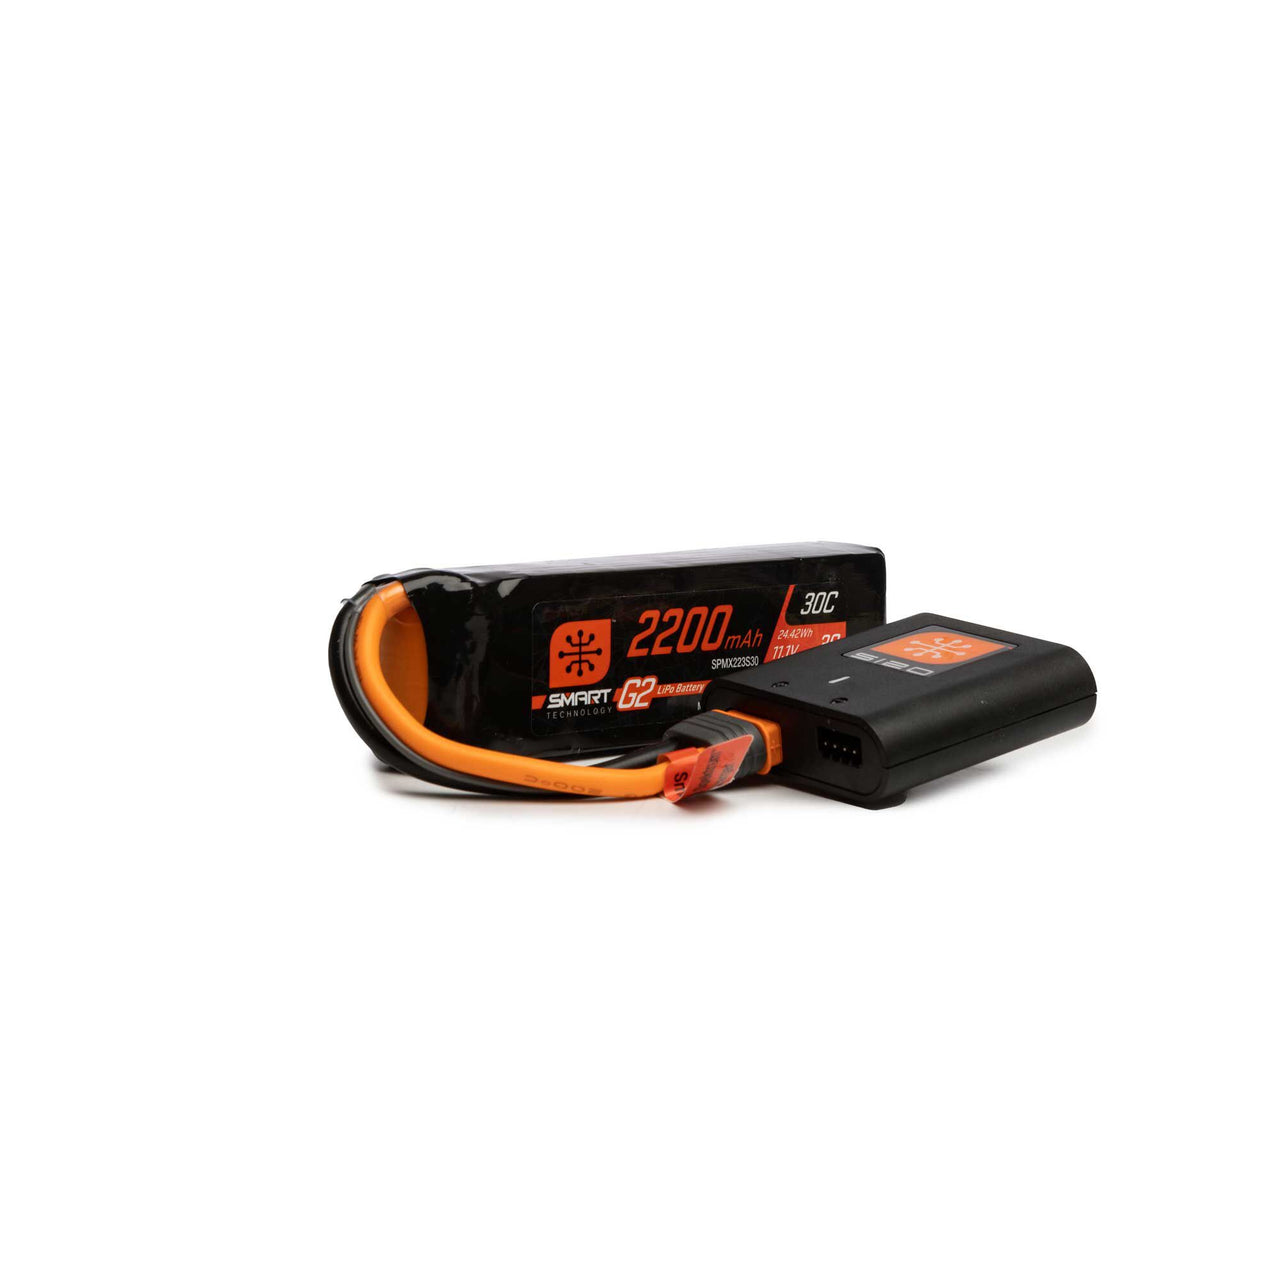 Ensemble SPMXPSA200 Smart Powerstage Air : batterie LiPo 3S G2 2 200 mAh / chargeur S120 